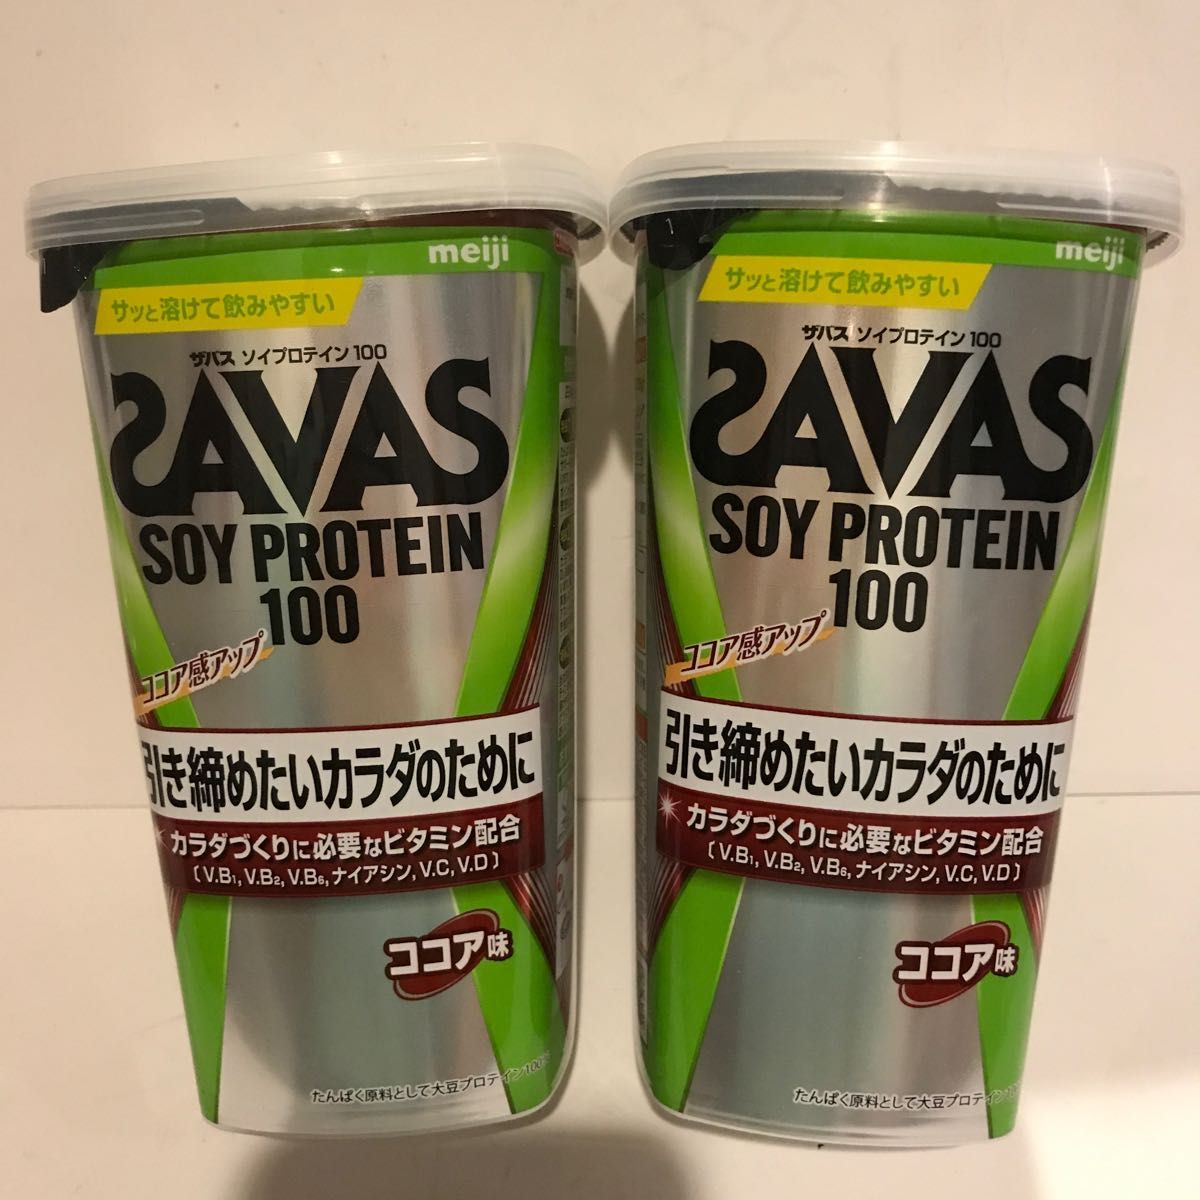 ザバス(SAVAS) ソイプロテイン100 ココア味 224g.(2個).  ココア味 280g(1個)チョコレート風味 231g